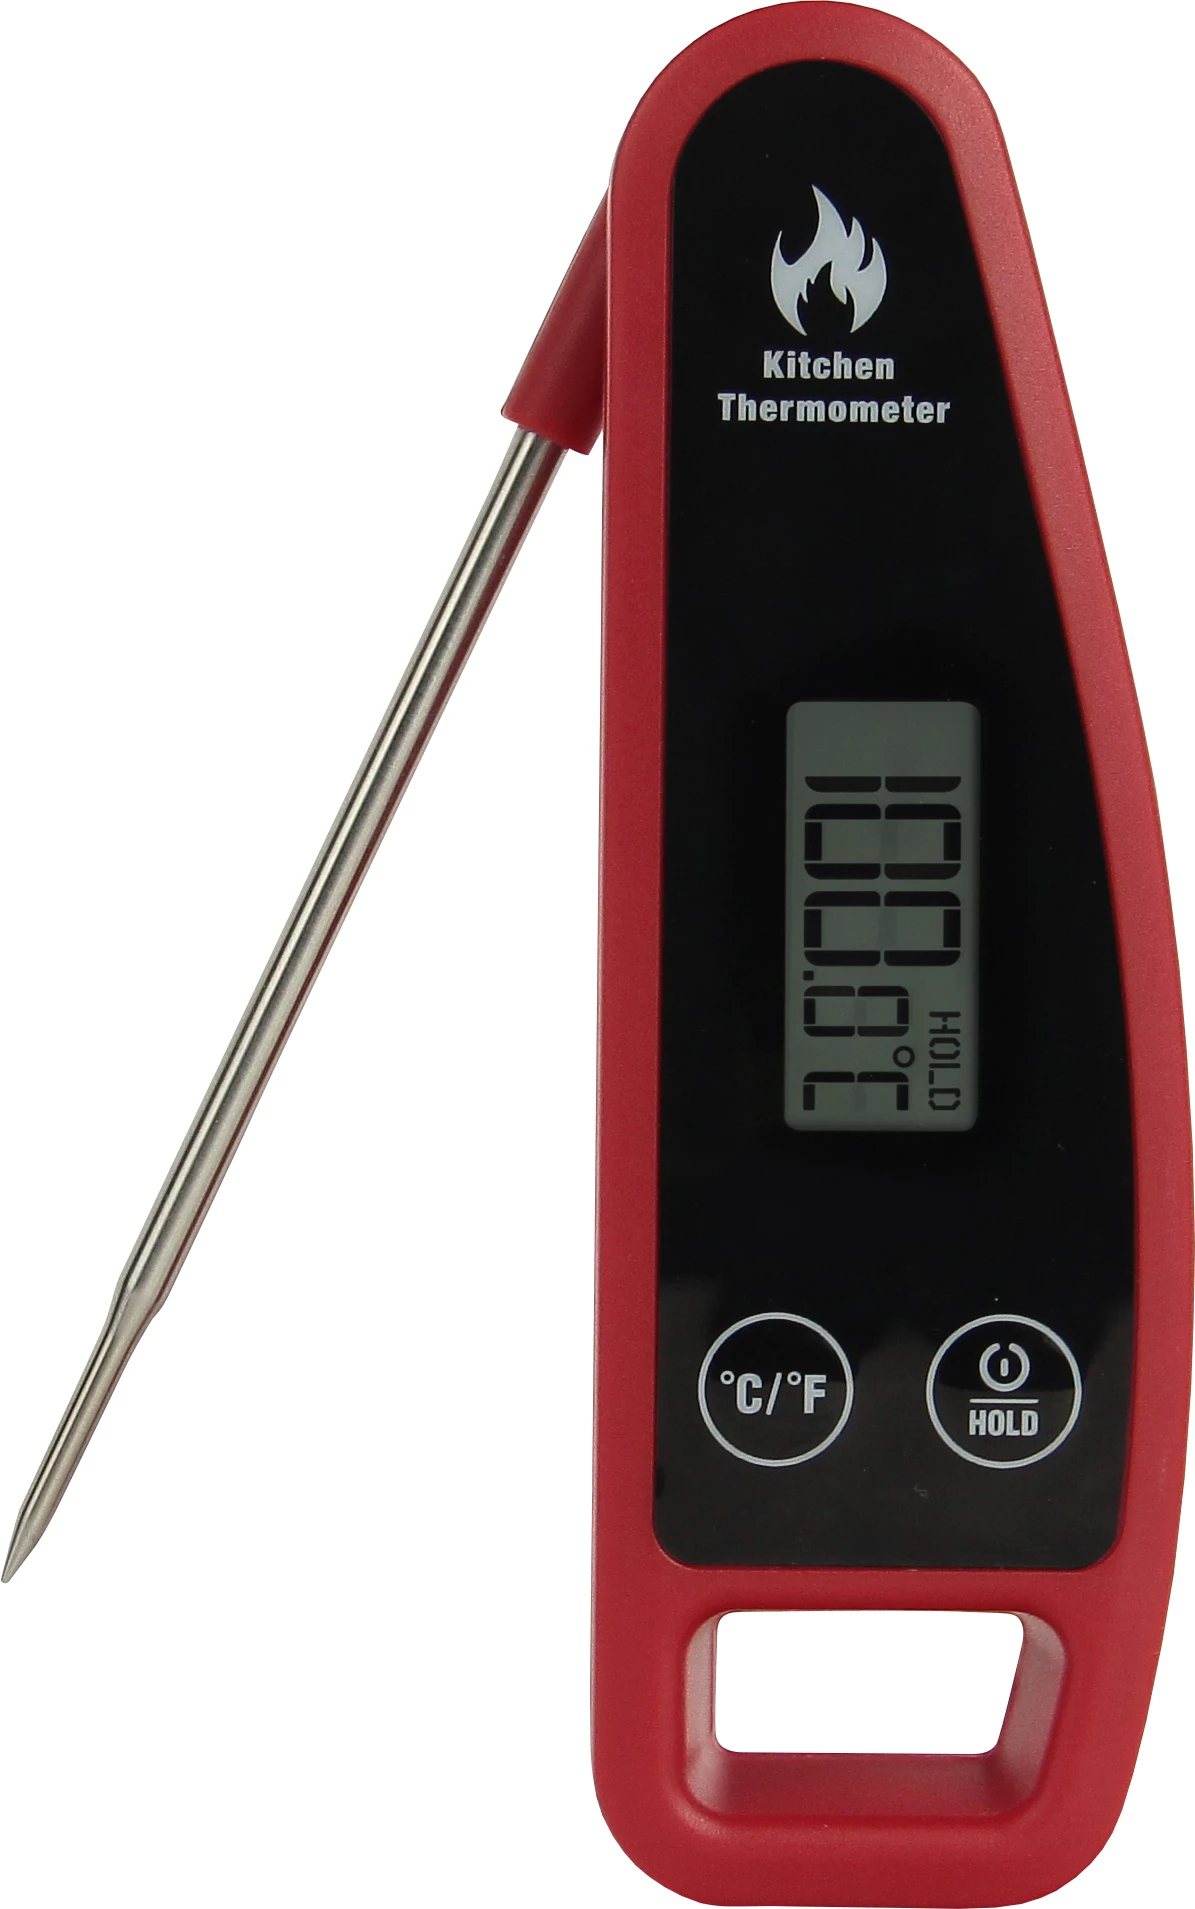 Foldetermometer, indstik